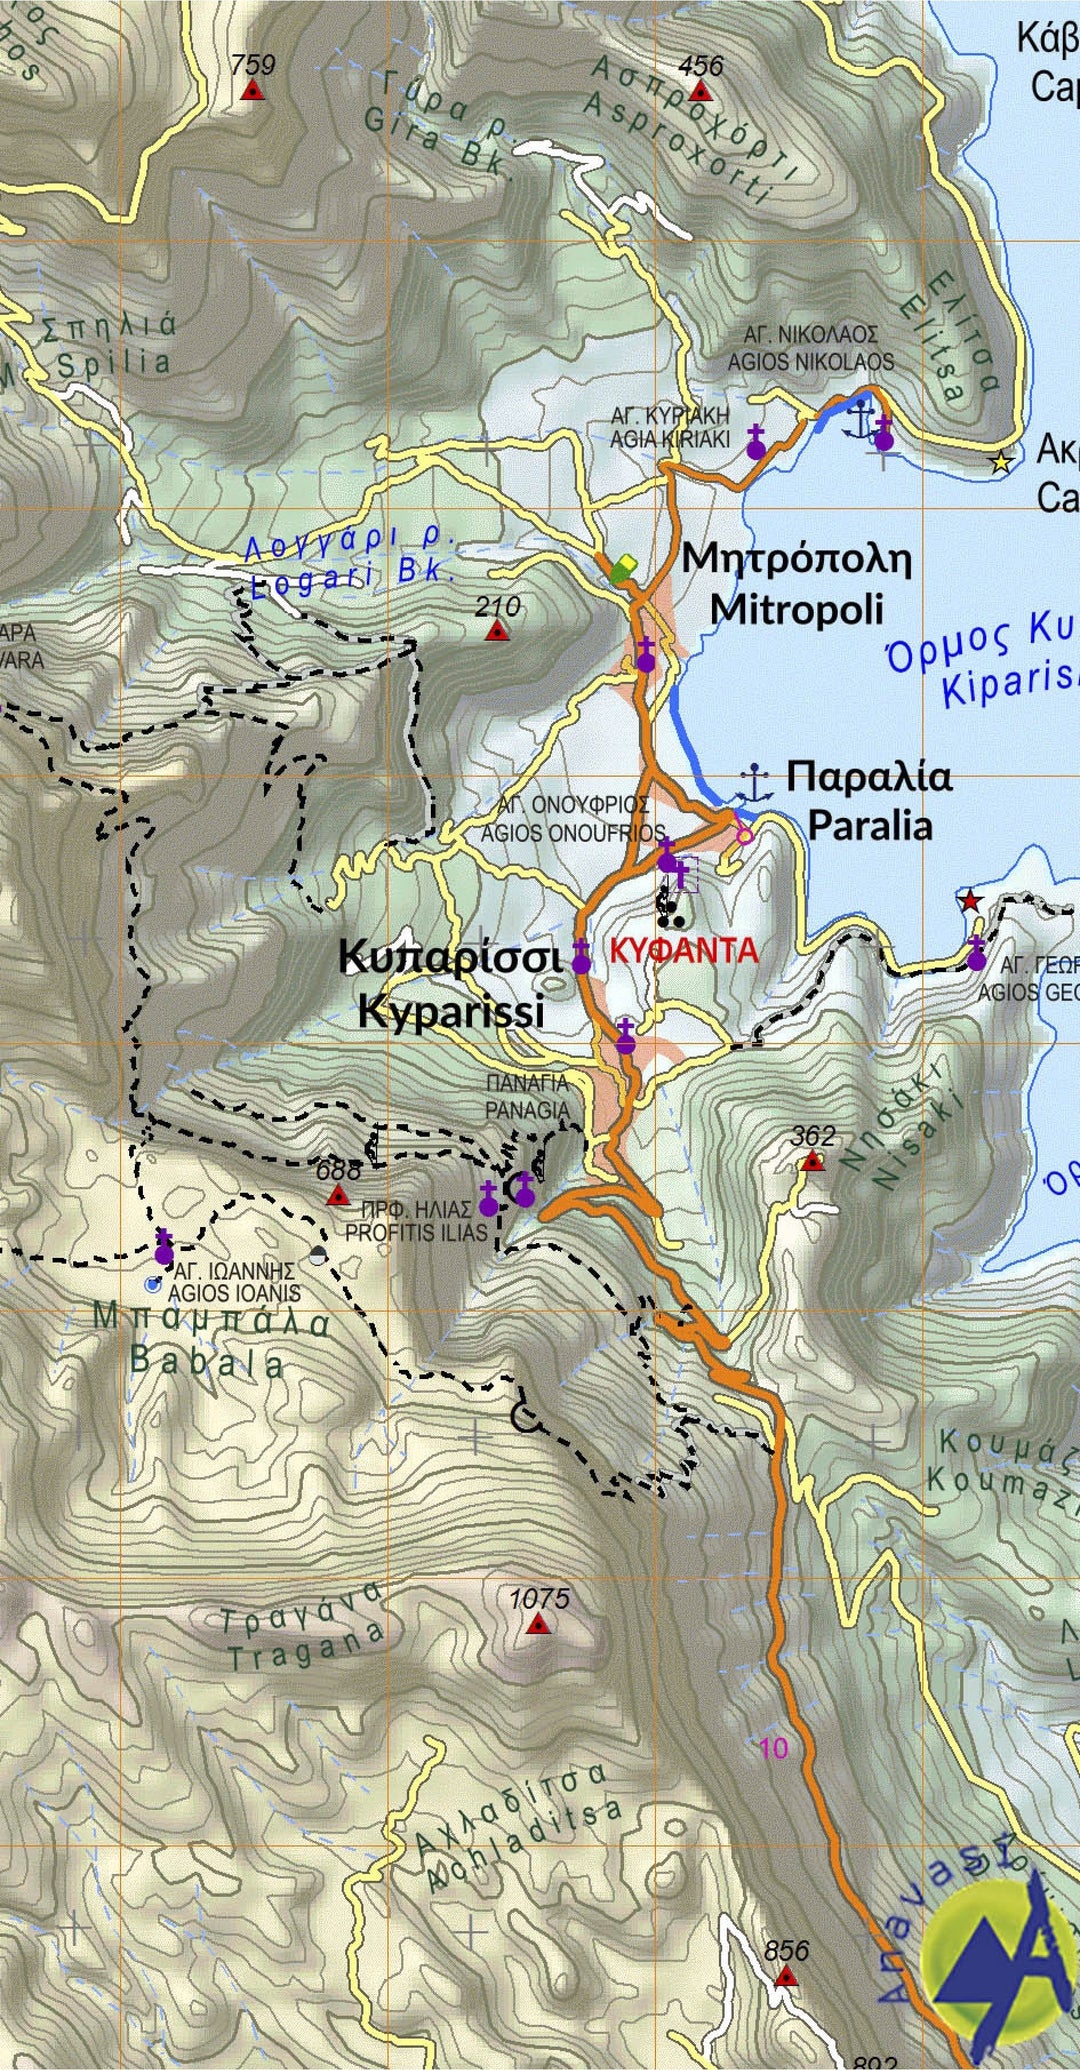 Carte de randonnée n° 8.7 - Mont Parnon (Grèce) | Anavasi carte pliée Anavasi 